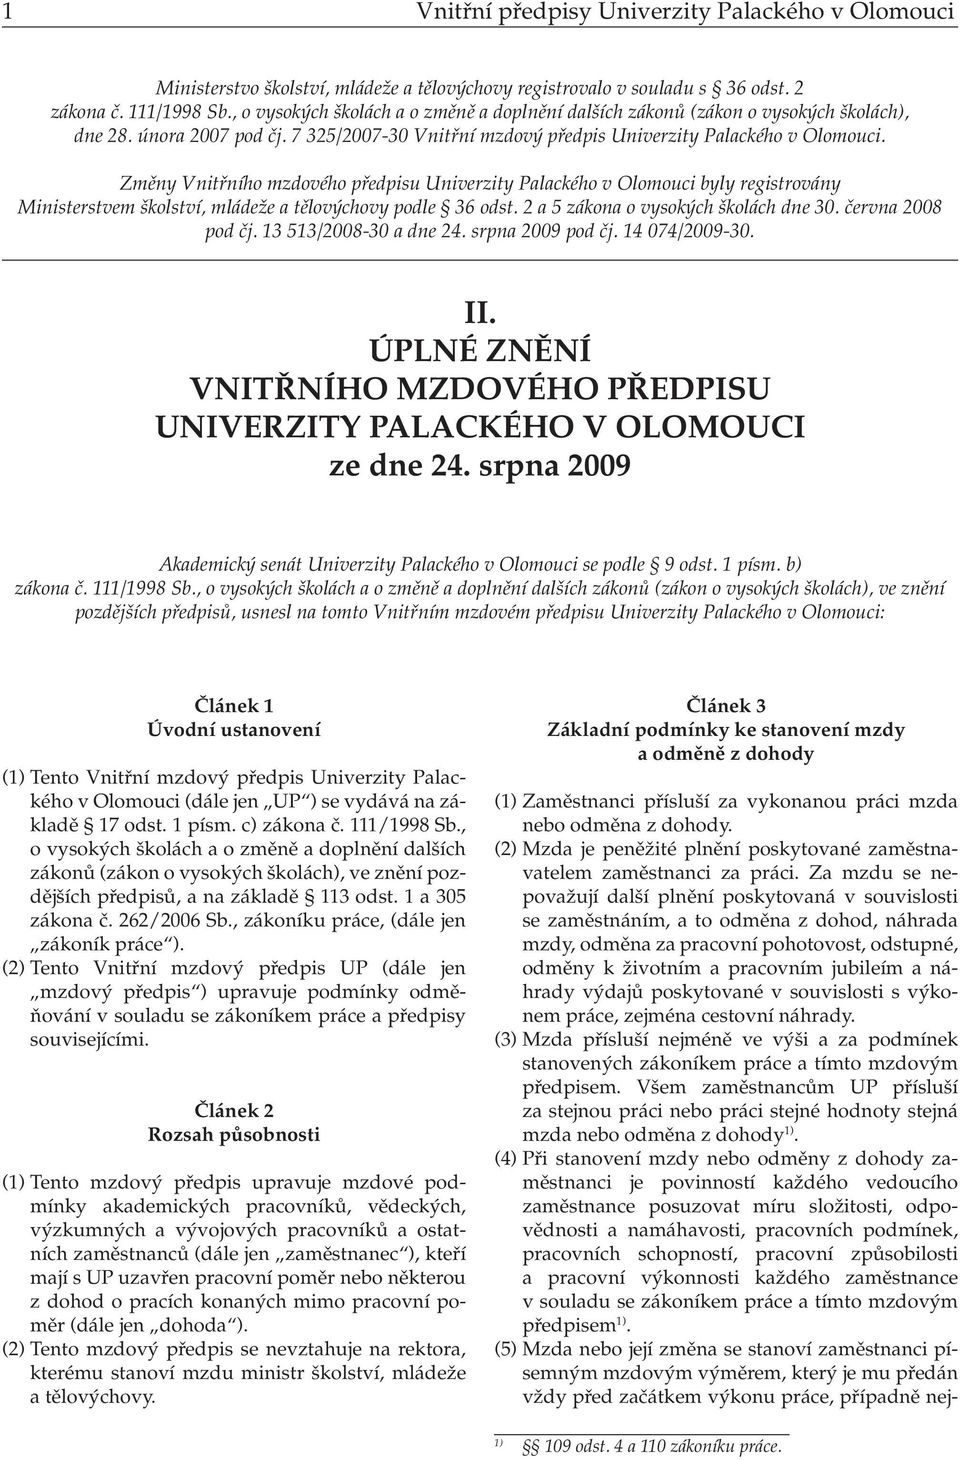 Změny Vnitřního mzdového předpisu Univerzity Palackého v Olomouci byly registrovány Ministerstvem školství, mládeže a tělovýchovy podle 36 odst. 2 a 5 zákona o vysokých školách dne 30.